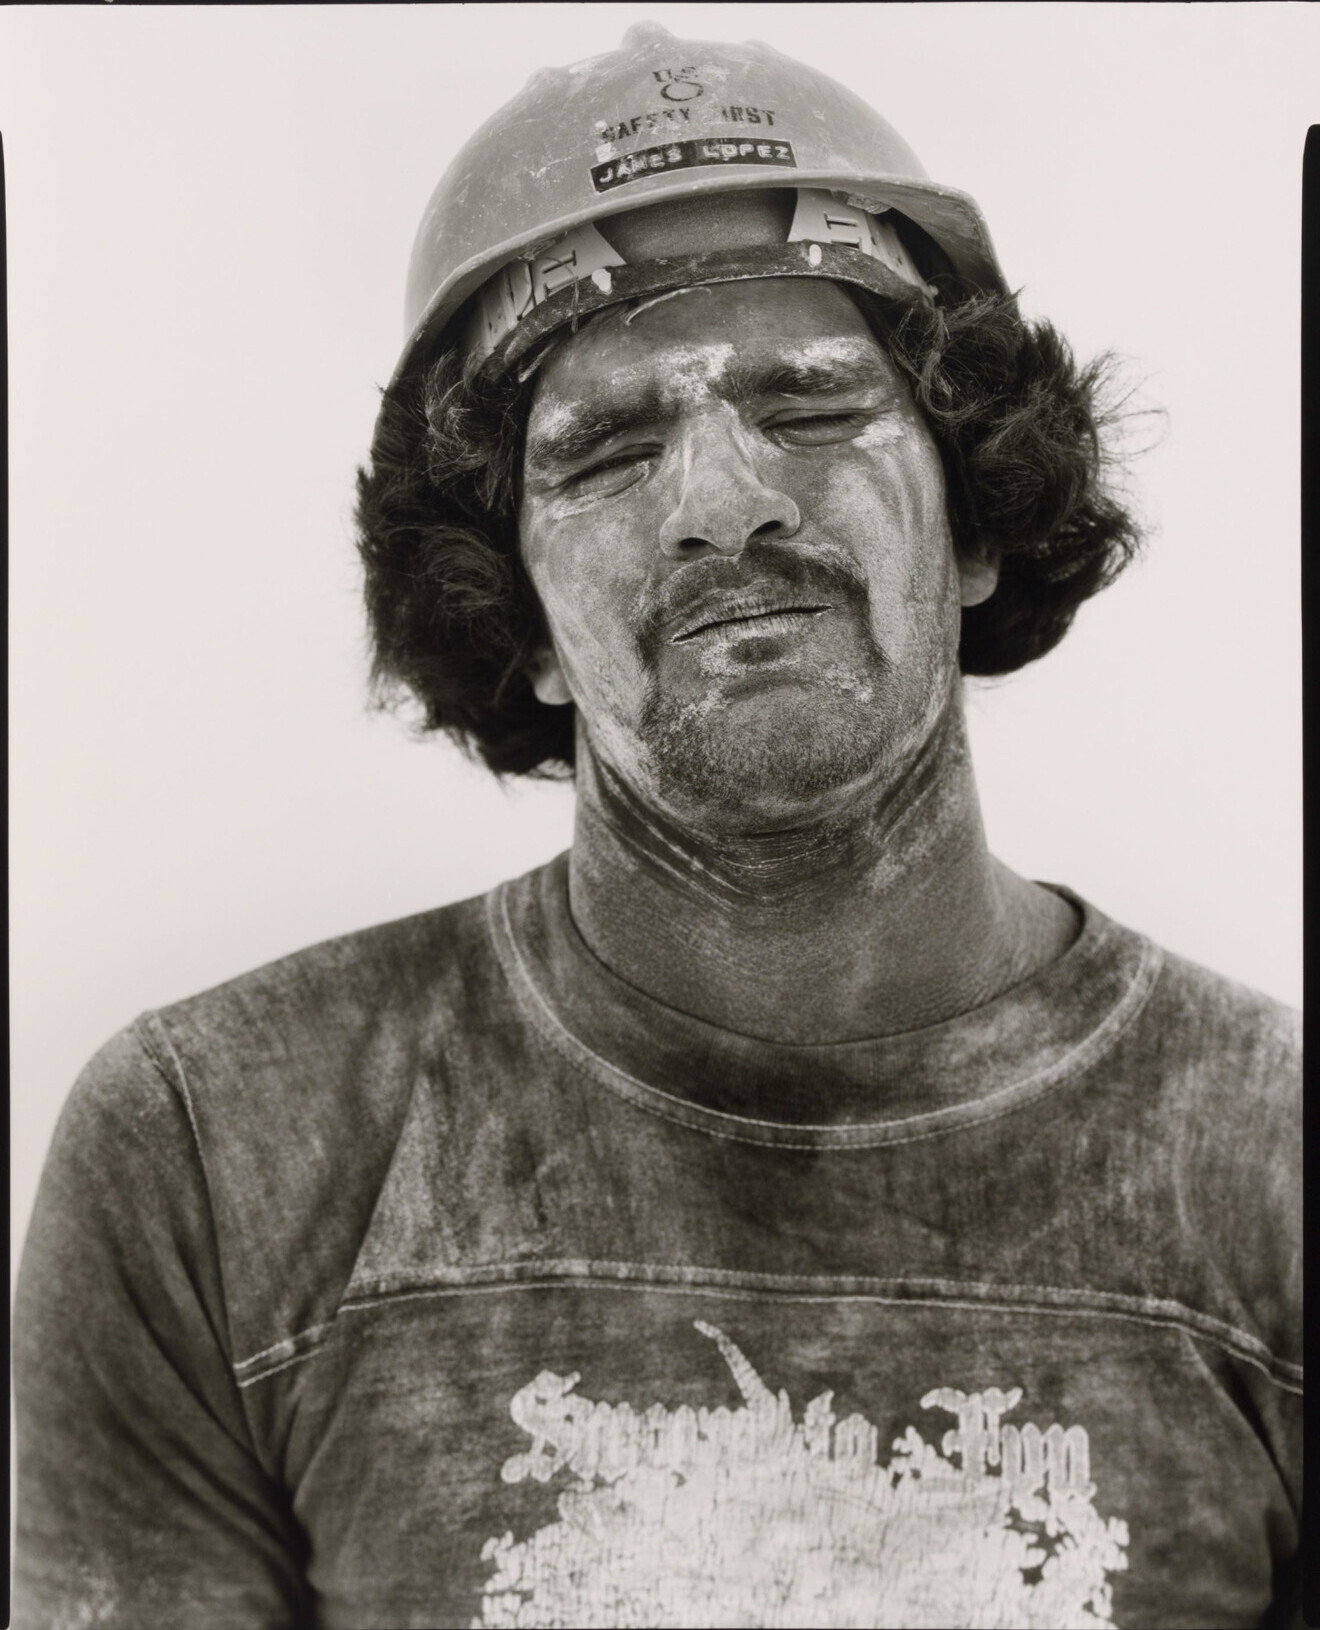 Джимми Лопес, шахтер по добыче гипса, Свитуотер, Техас, 1979 г. Фотограф Ричард Аведон